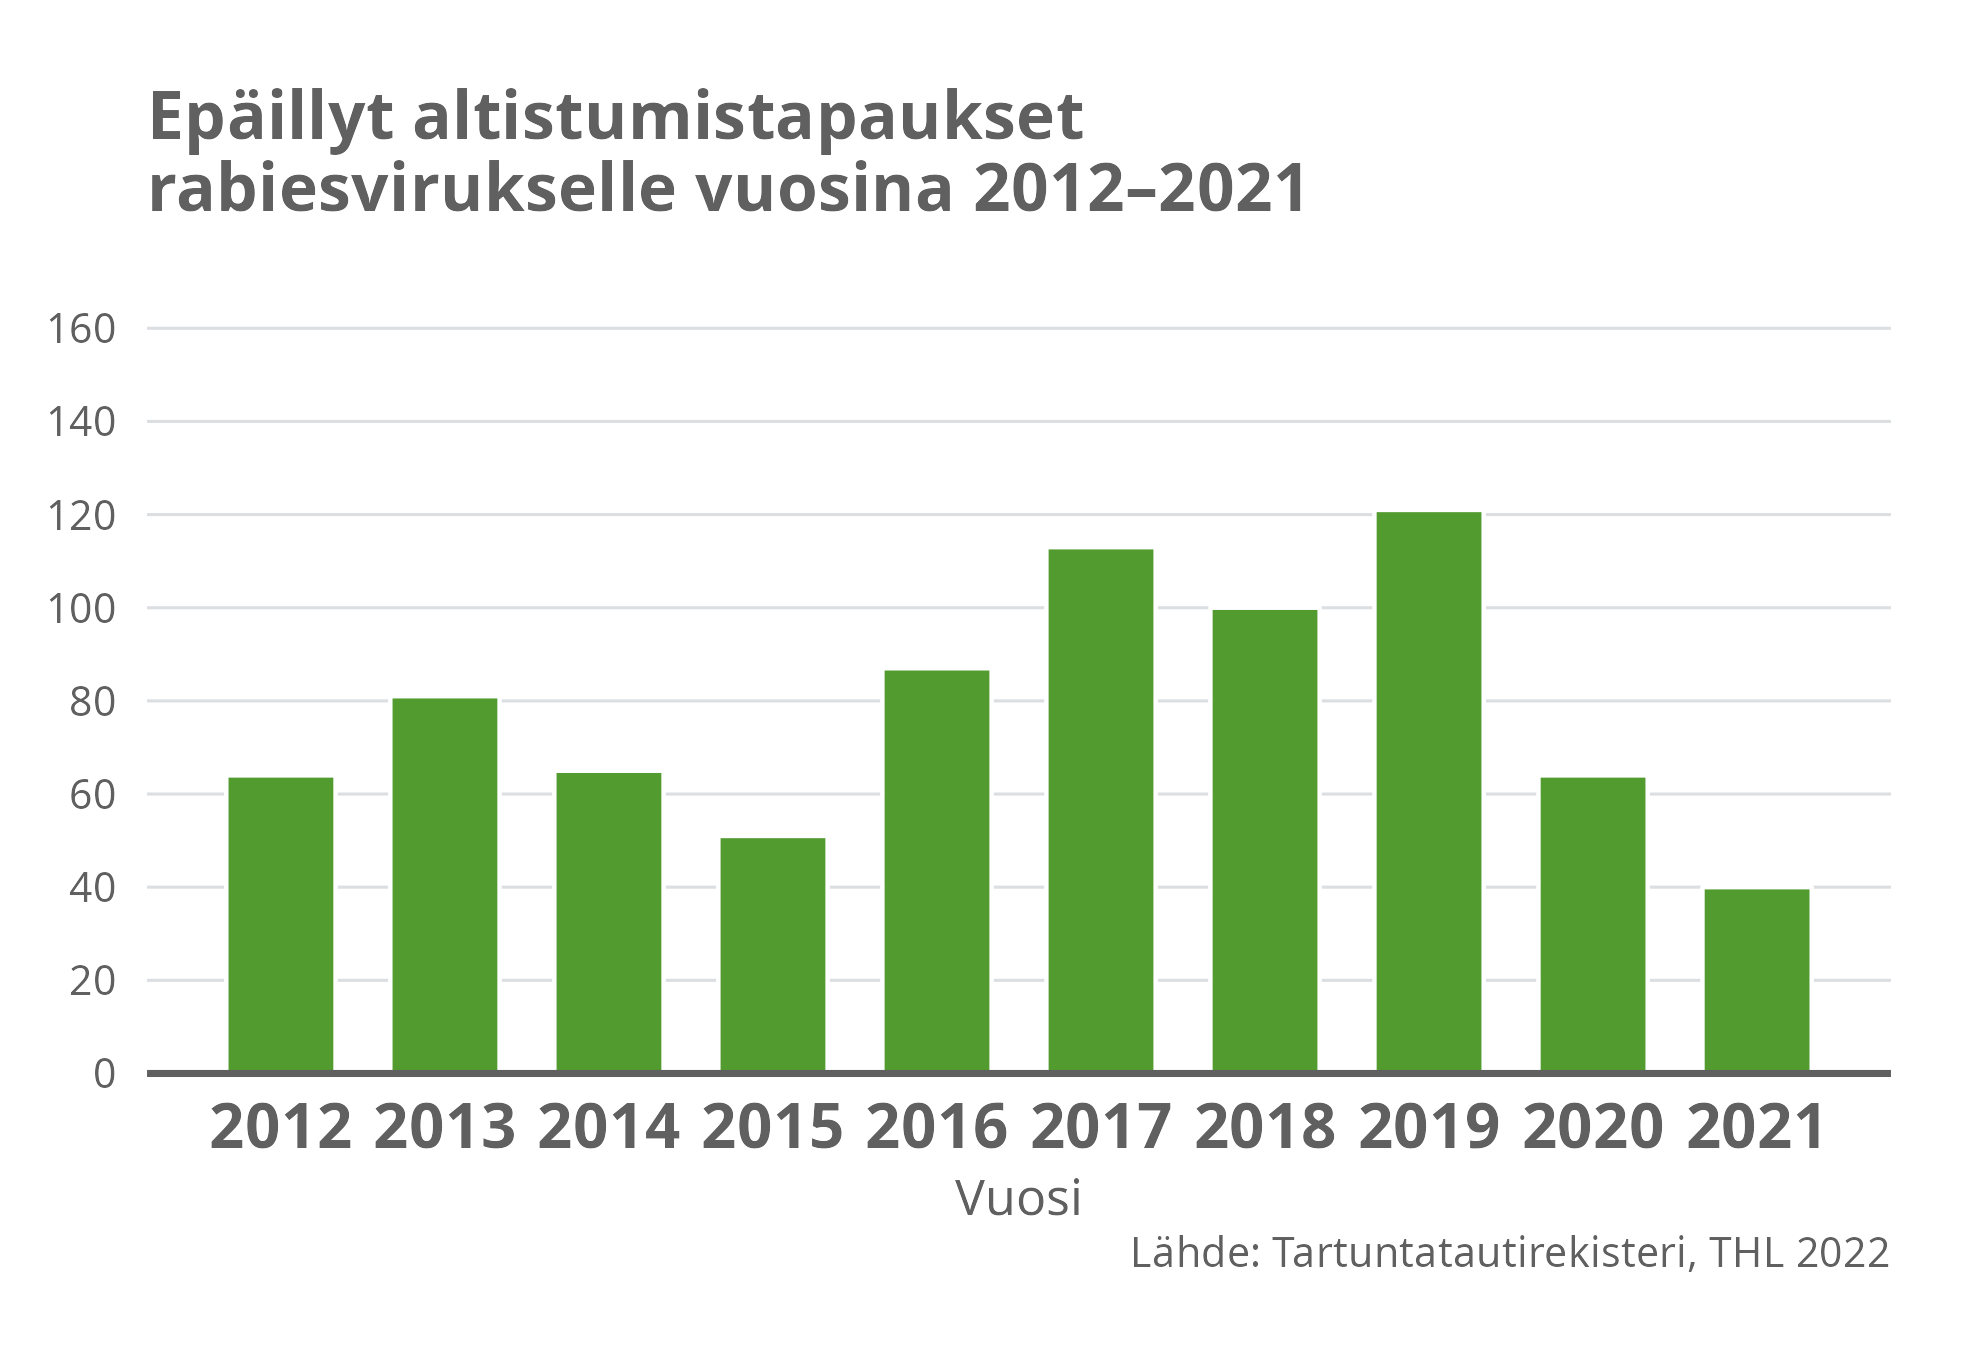 Epäillyt altustumistapaukset rabiesvirukselle vuosin 2012-2021.